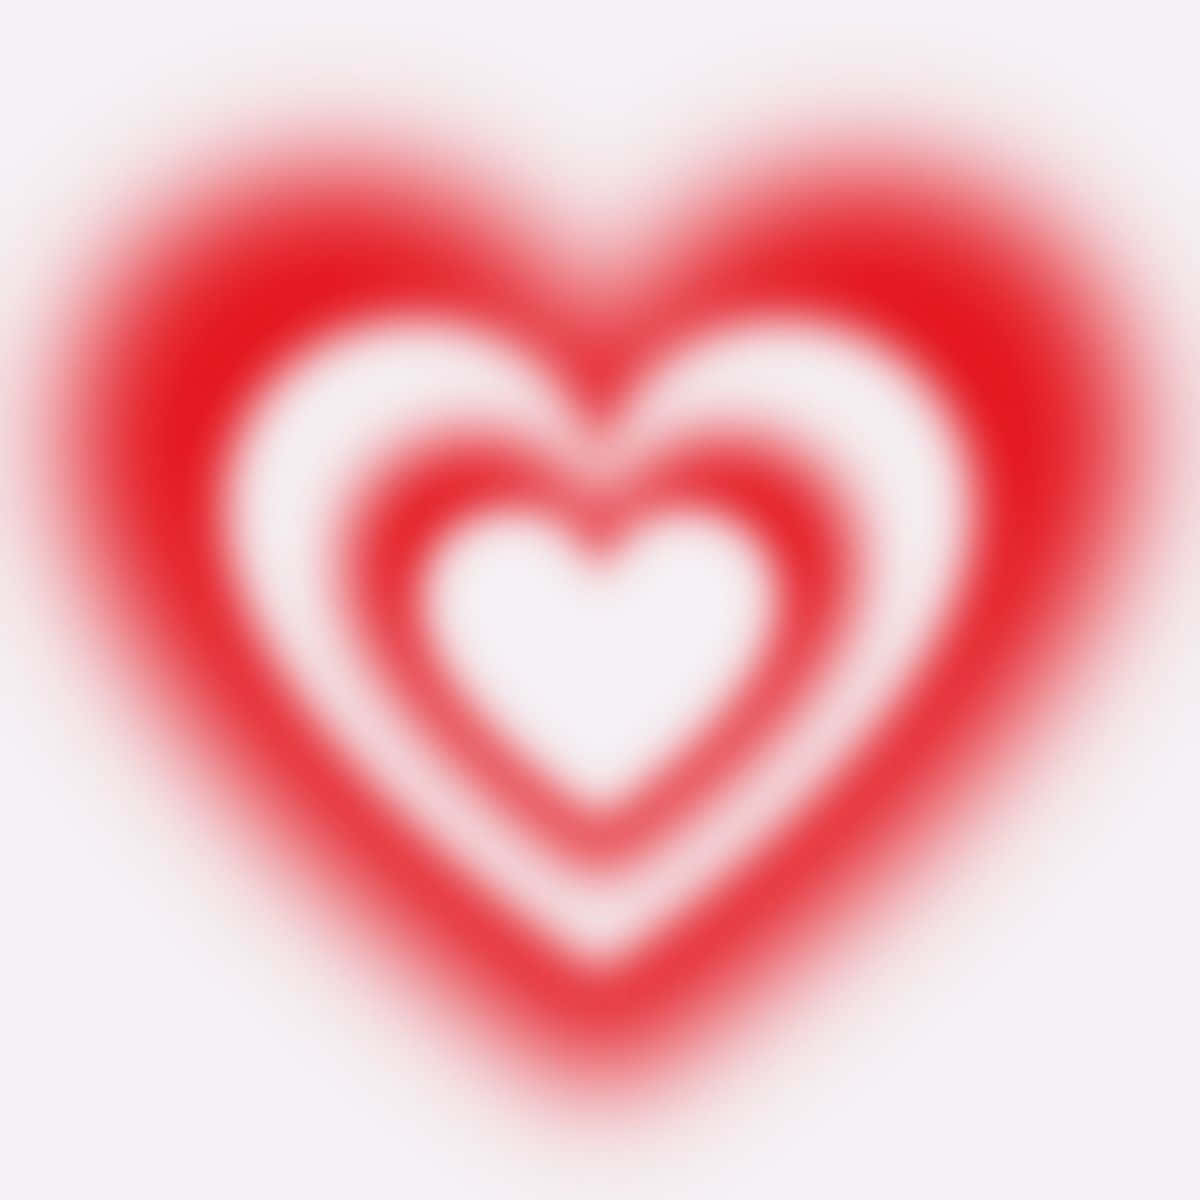 Abstract Blurred Heart Aura Wallpaper